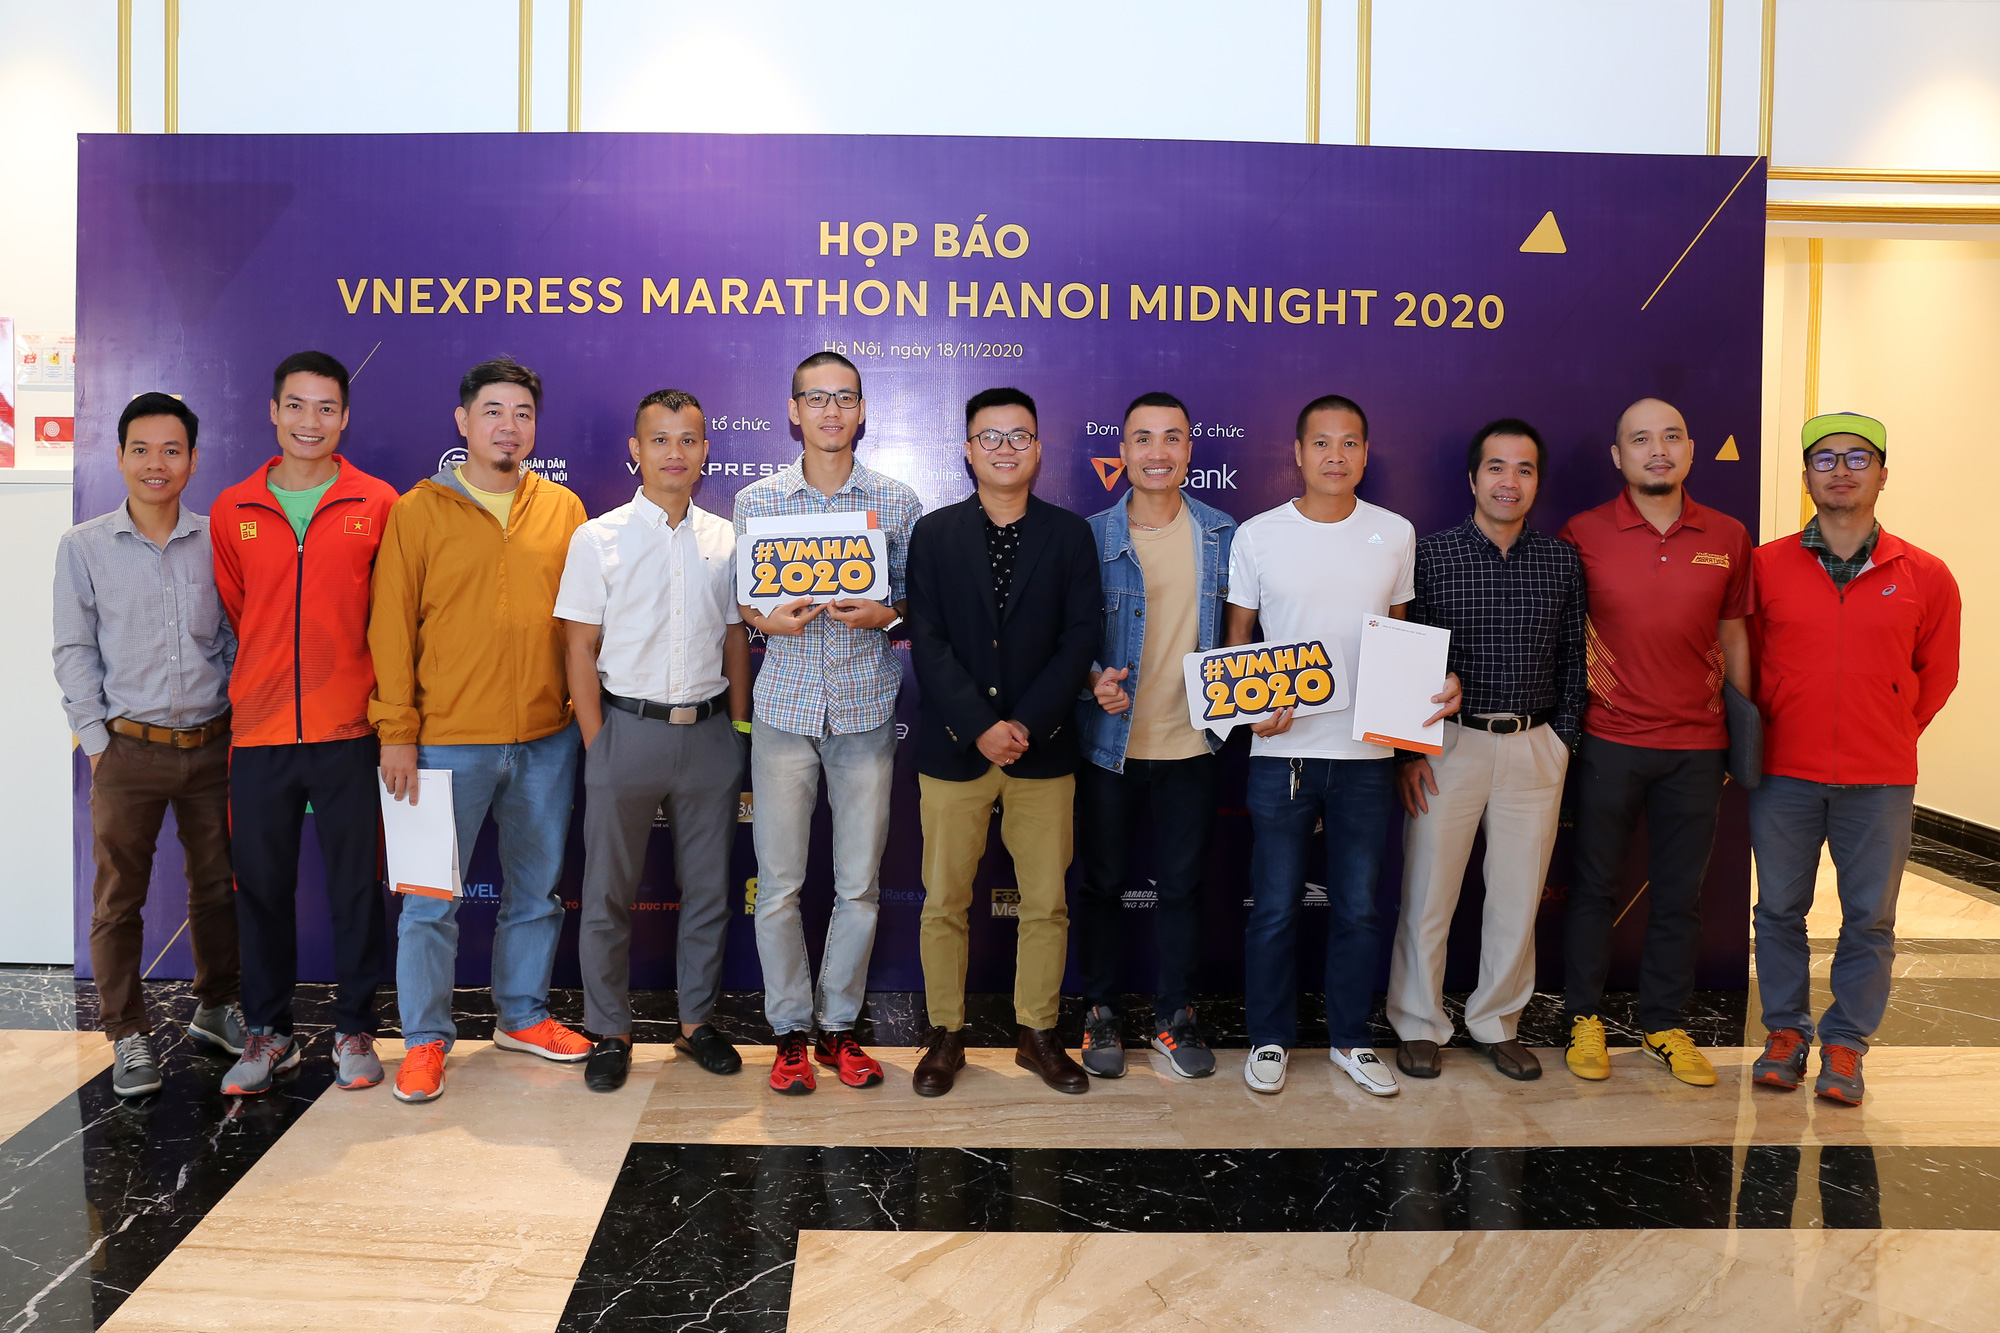 VnExpress Marathon Hanoi Midnight 2020: Hơn 1 tỷ đồng tiền thưởng! - Ảnh 5.